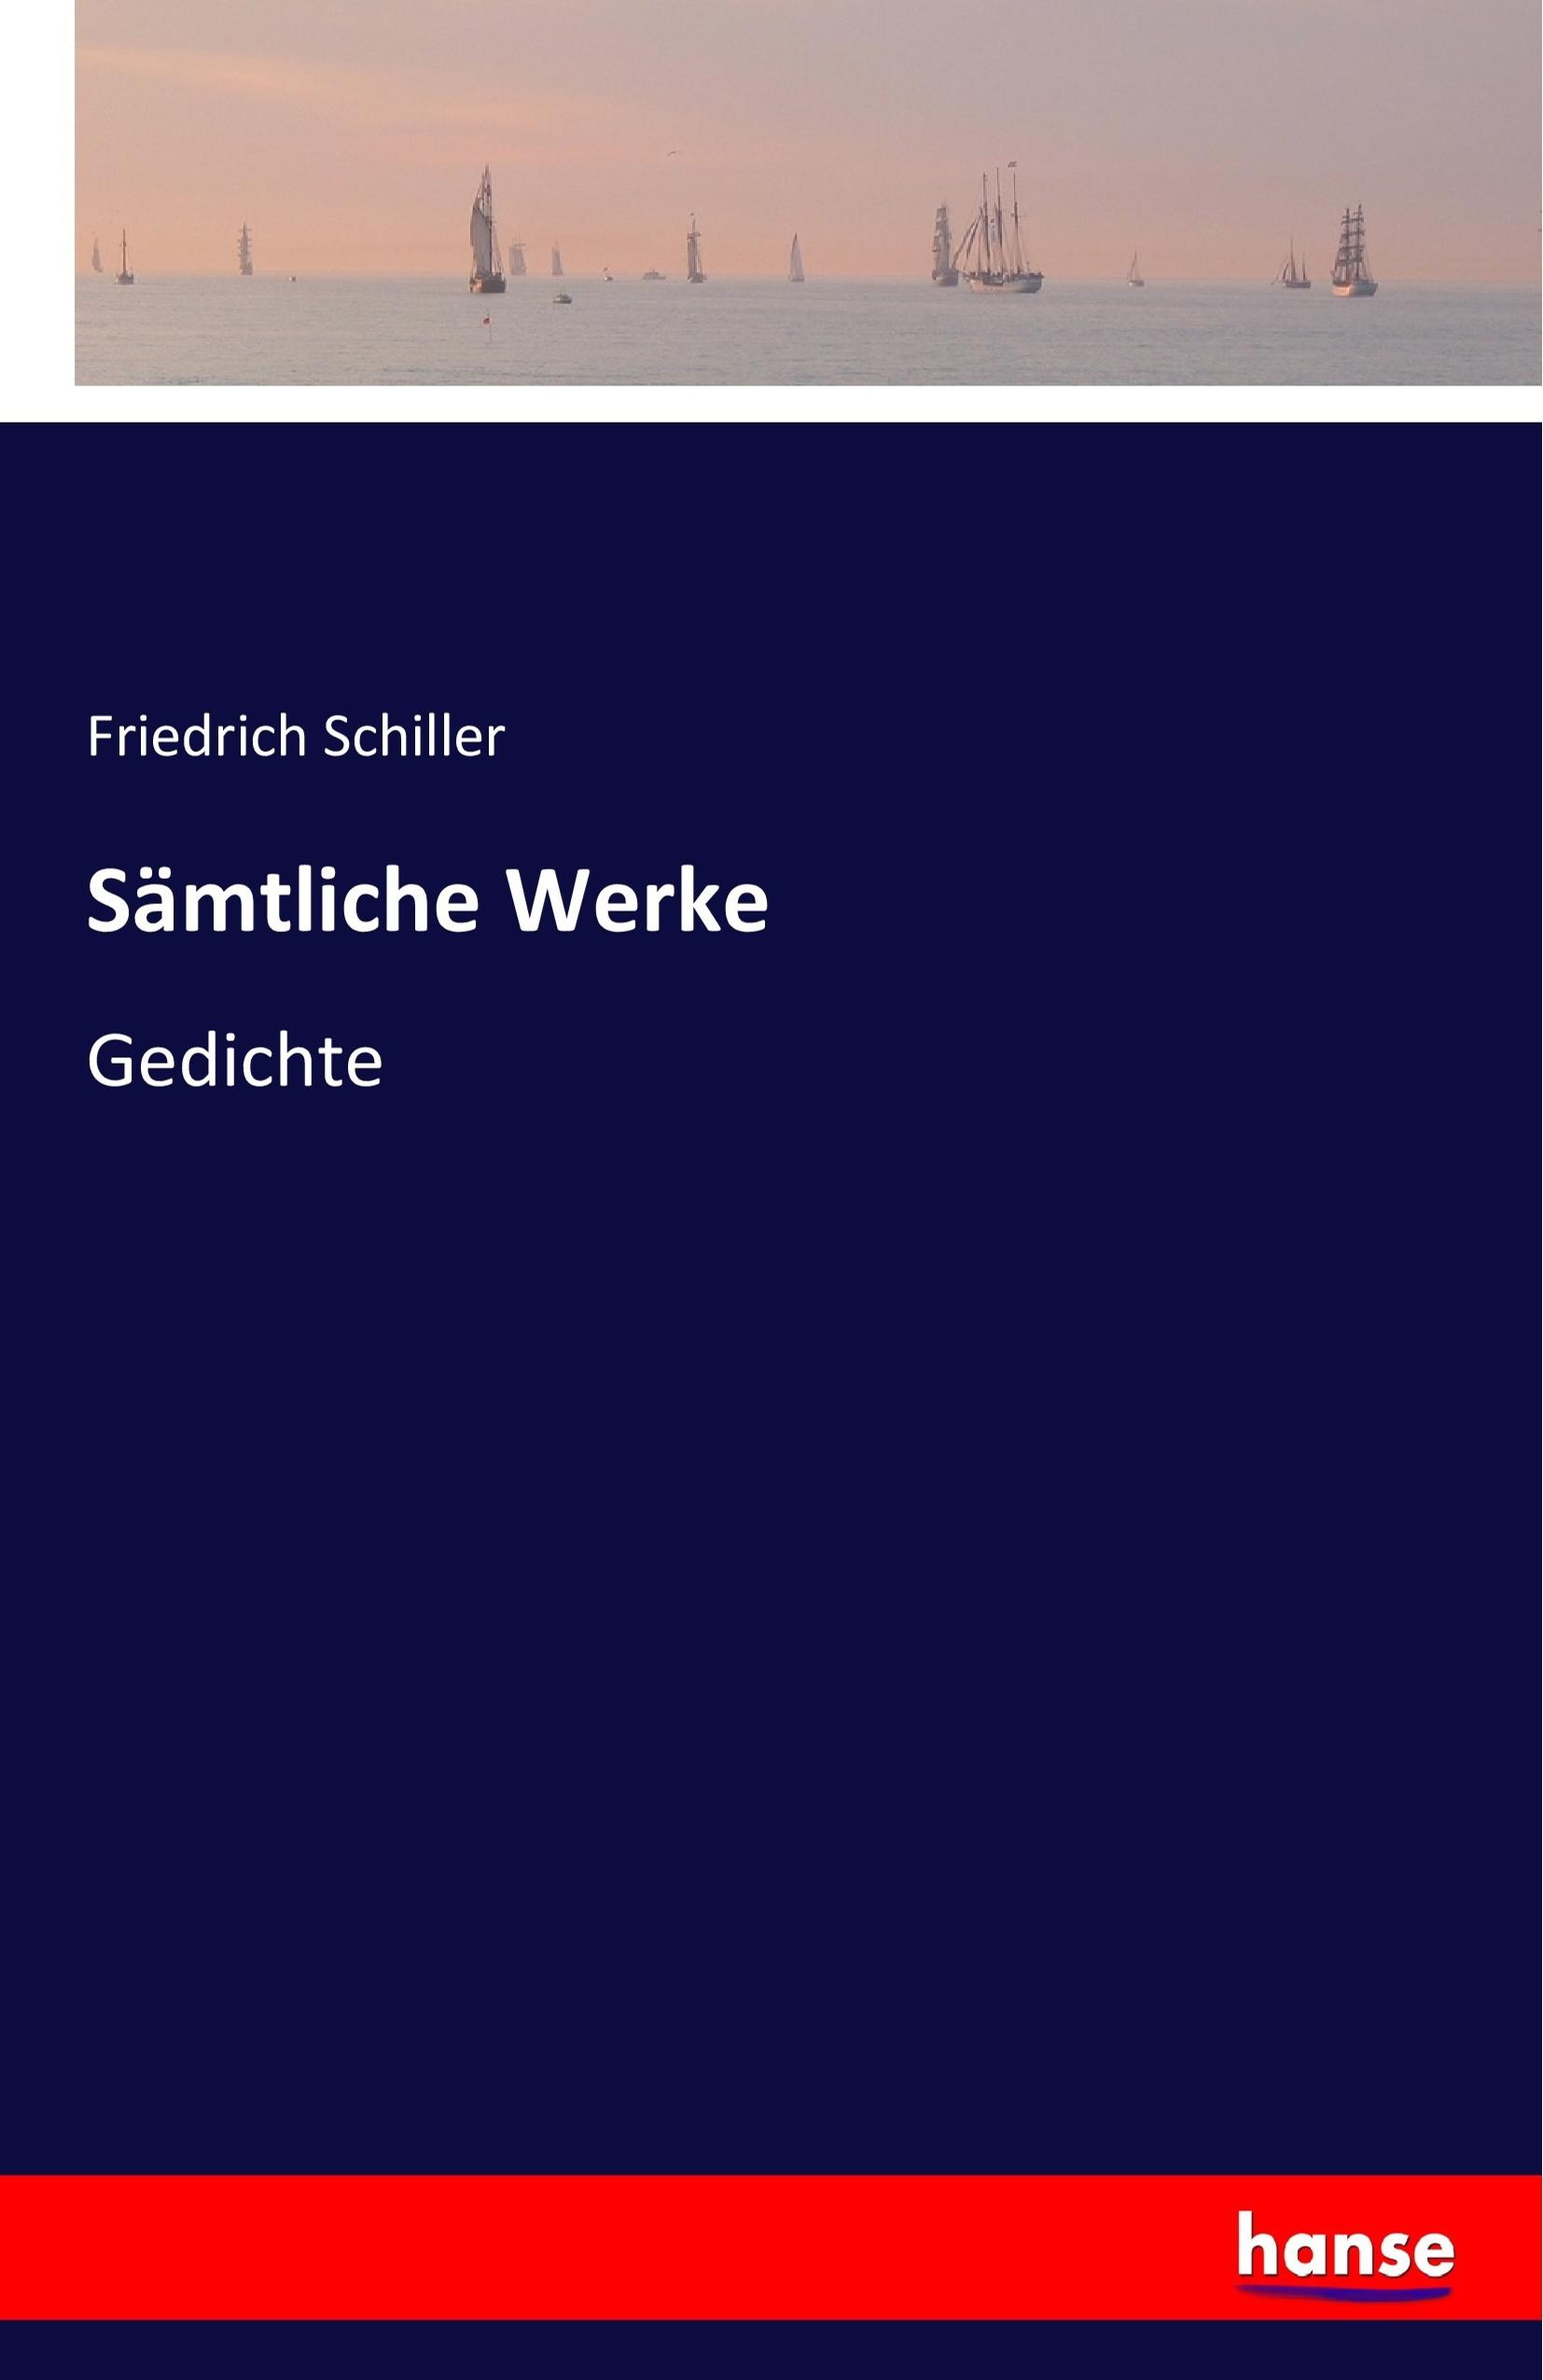 Sämtliche Werke | Gedichte | Friedrich Schiller | Taschenbuch | Paperback | 284 S. | Deutsch | 2019 | hansebooks | EAN 9783741133527 - Schiller, Friedrich